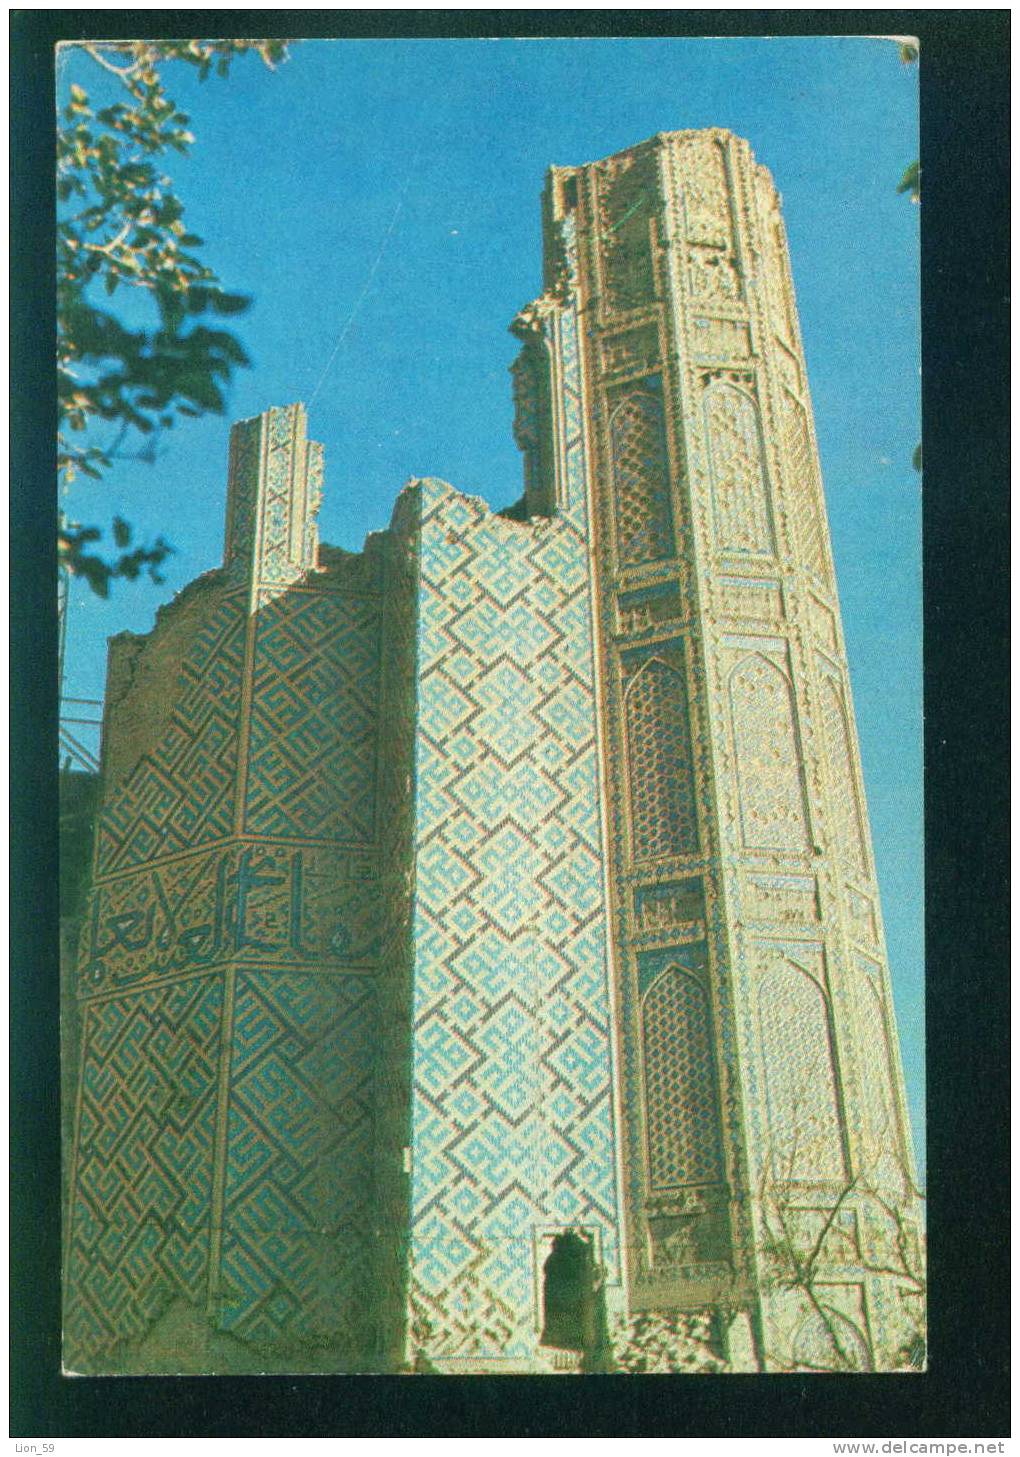 Uzbekistan - SAMARKAND - BIBIKHANYM ( A FRAGMENT OF THE PORTAL ) / BIBIKHANYM (un Fragment De La PORTAL)  086019 - Ouzbékistan